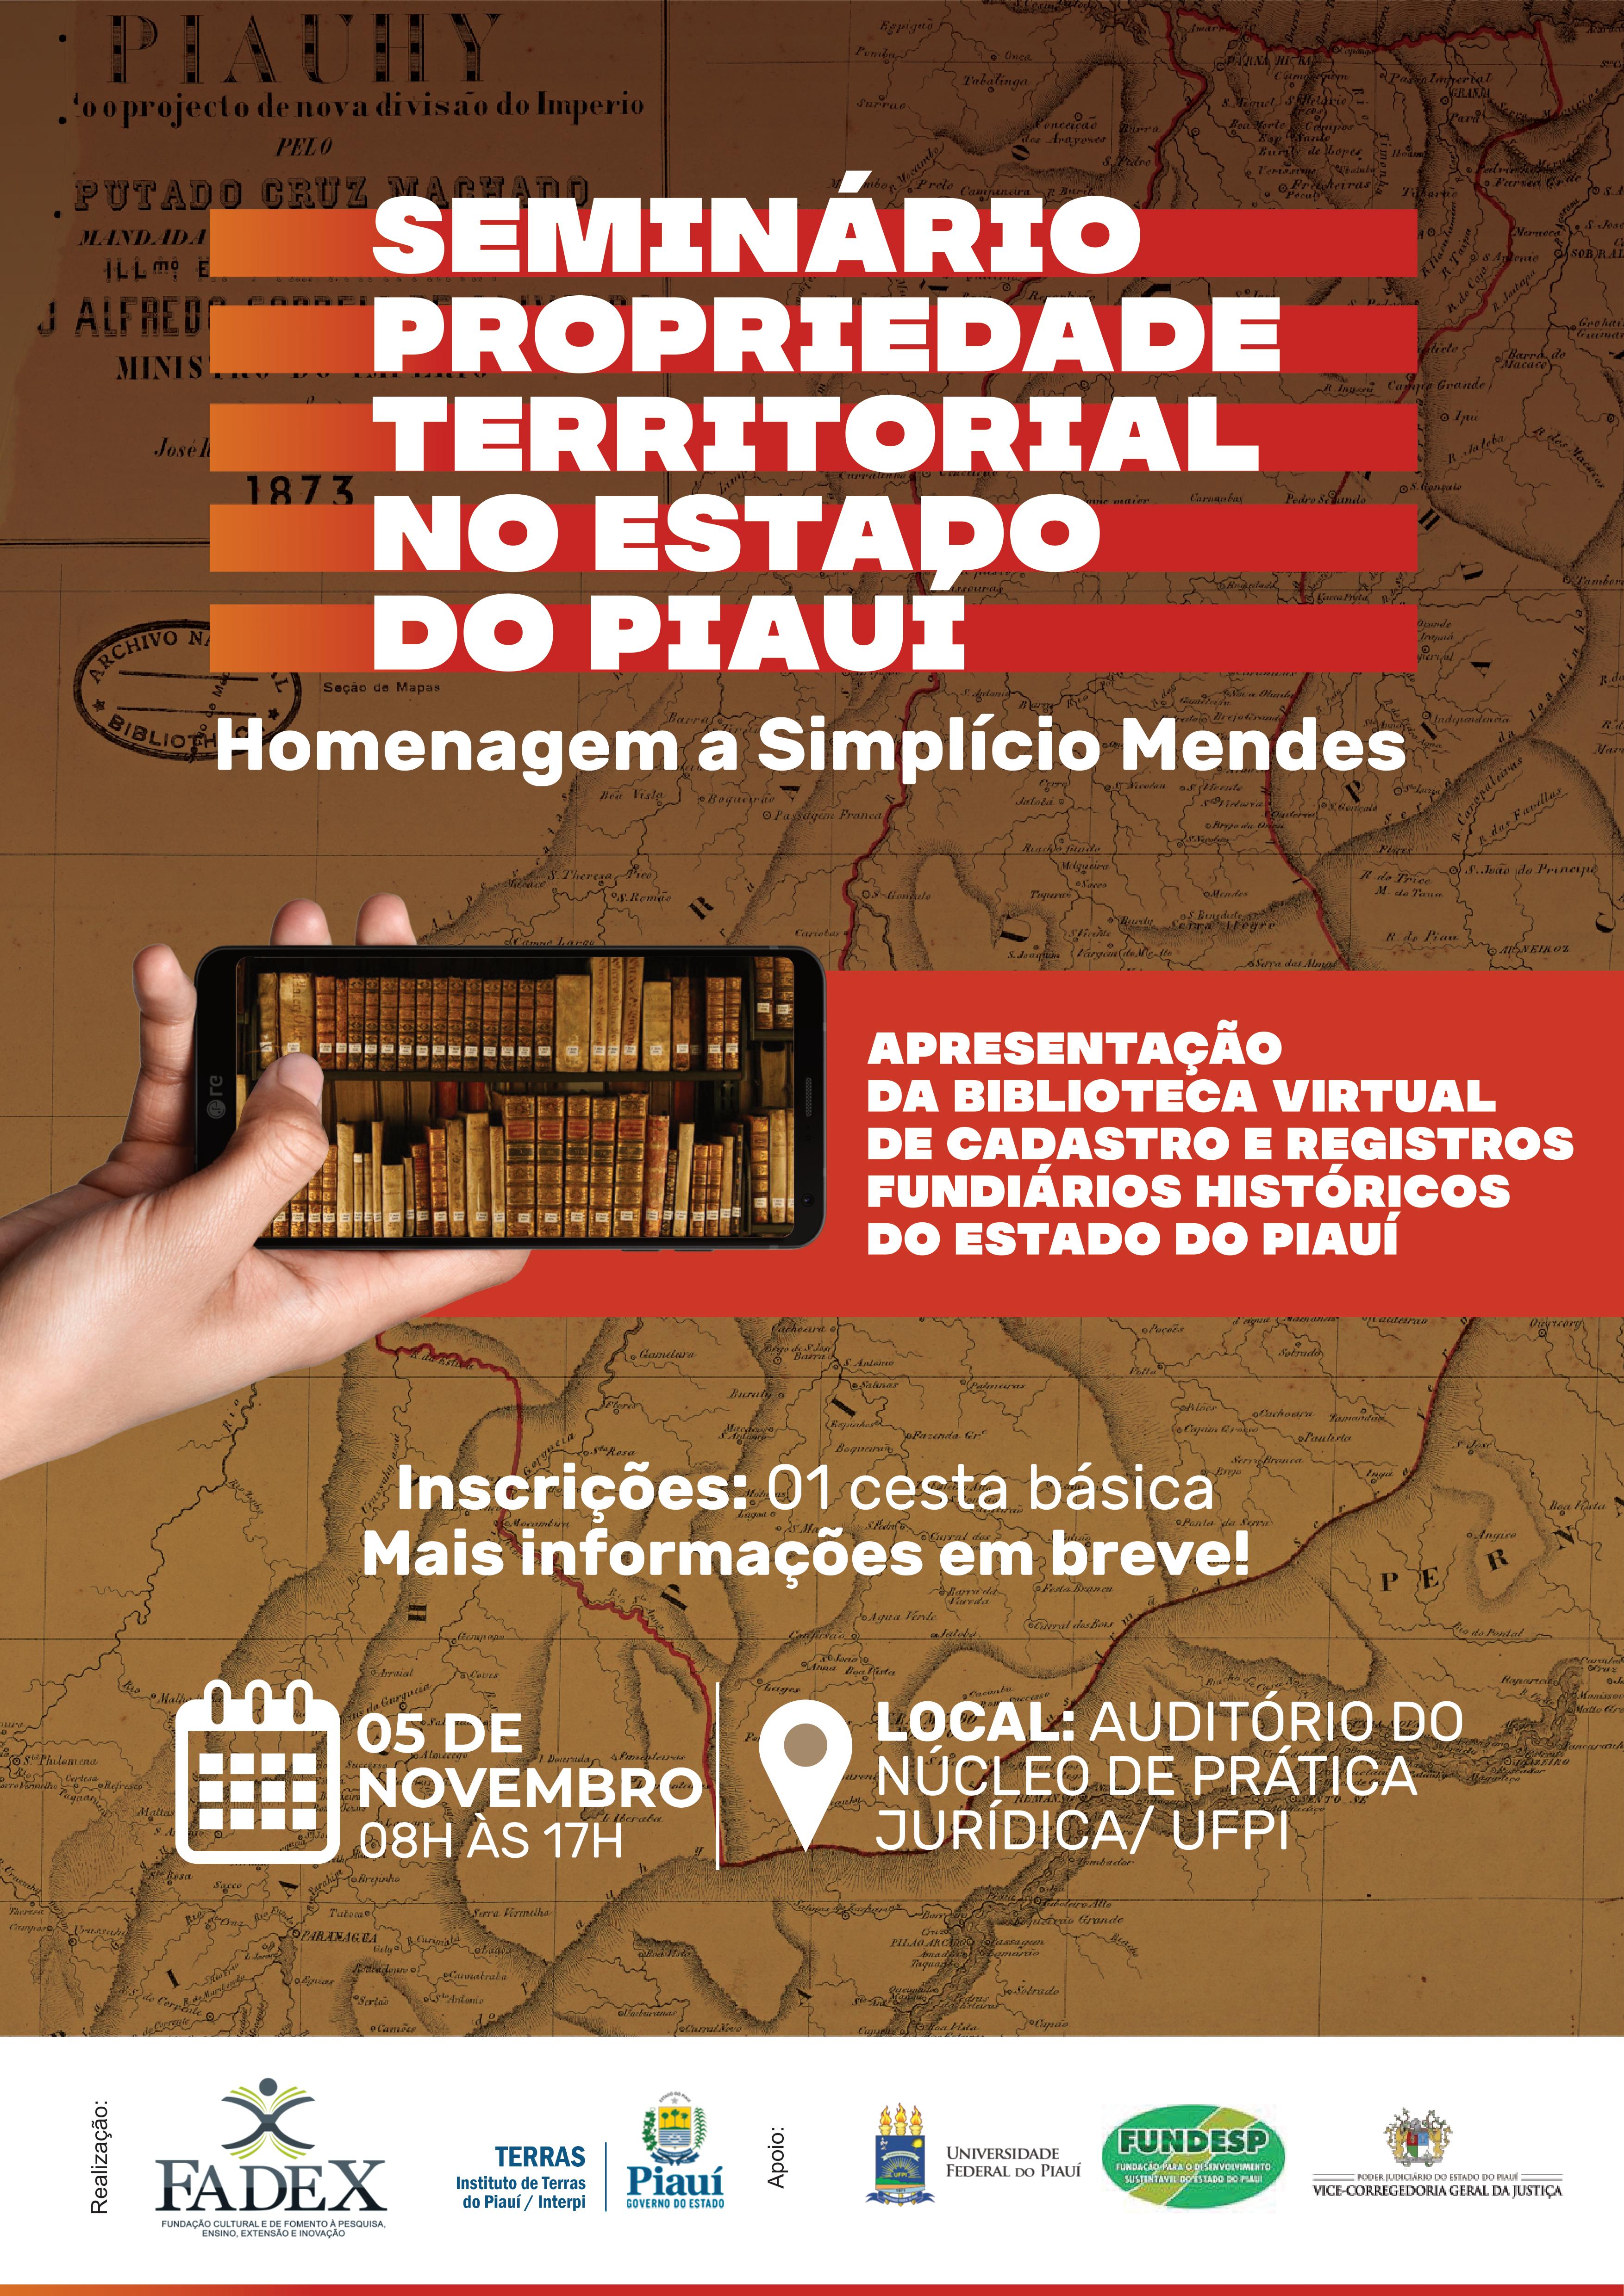 Fadex e Interpi realizam Seminário Propriedade Territorial no Estado do Piauí no dia 5 de novembro